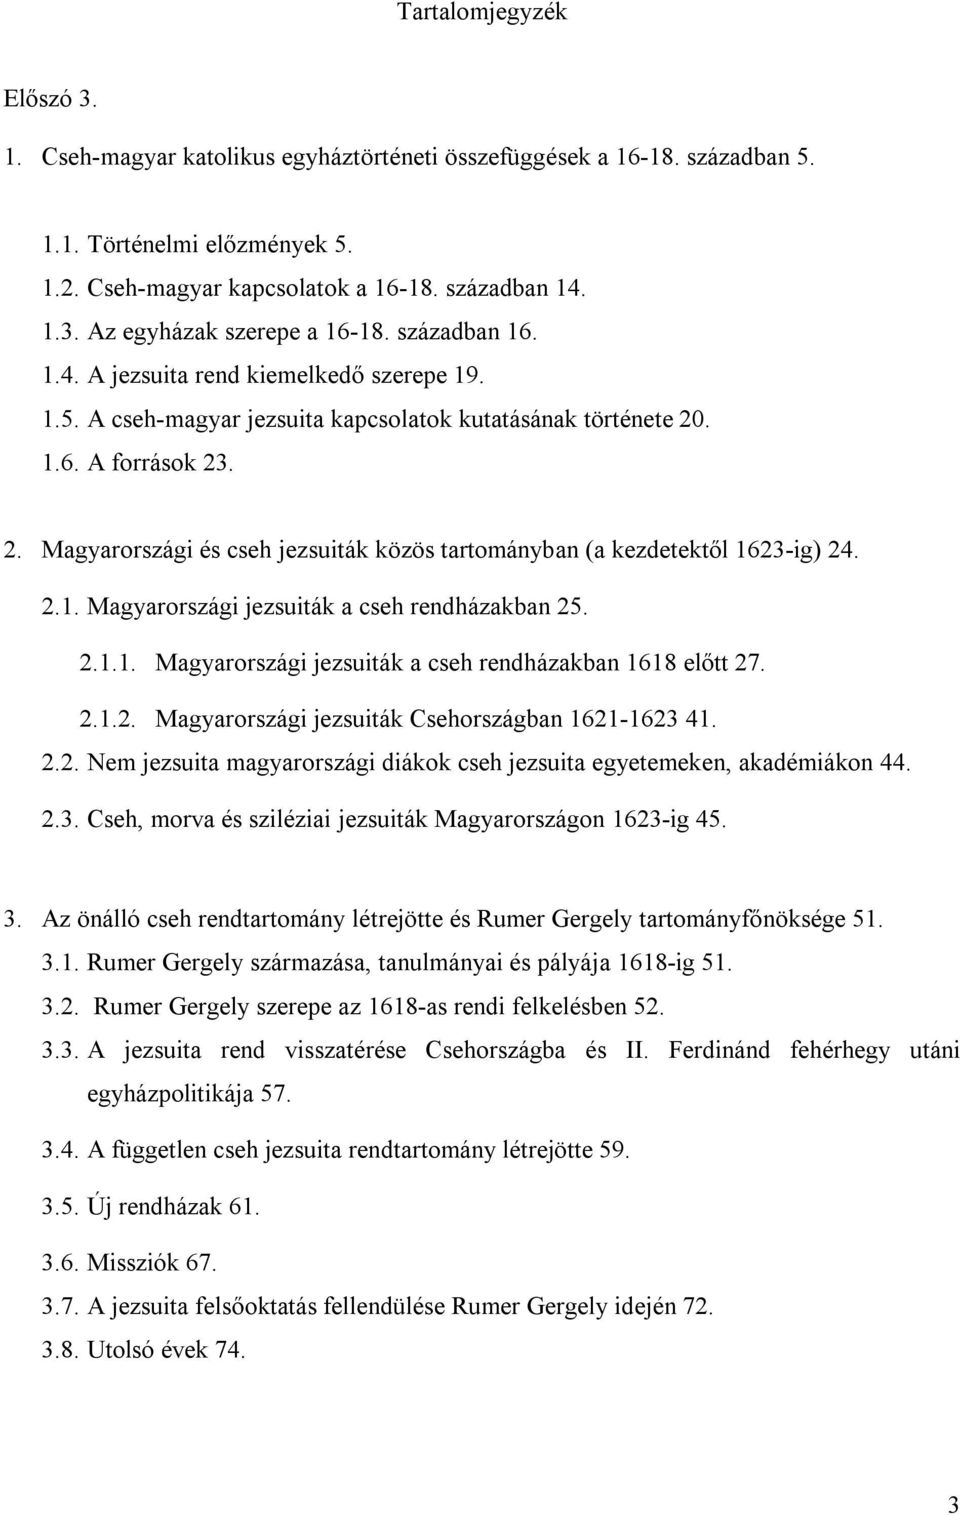 . 1.6. A források 23. 2. Magyarországi és cseh jezsuiták közös tartományban (a kezdetektől 1623-ig) 24. 2.1. Magyarországi jezsuiták a cseh rendházakban 25. 2.1.1. Magyarországi jezsuiták a cseh rendházakban 1618 előtt 27.